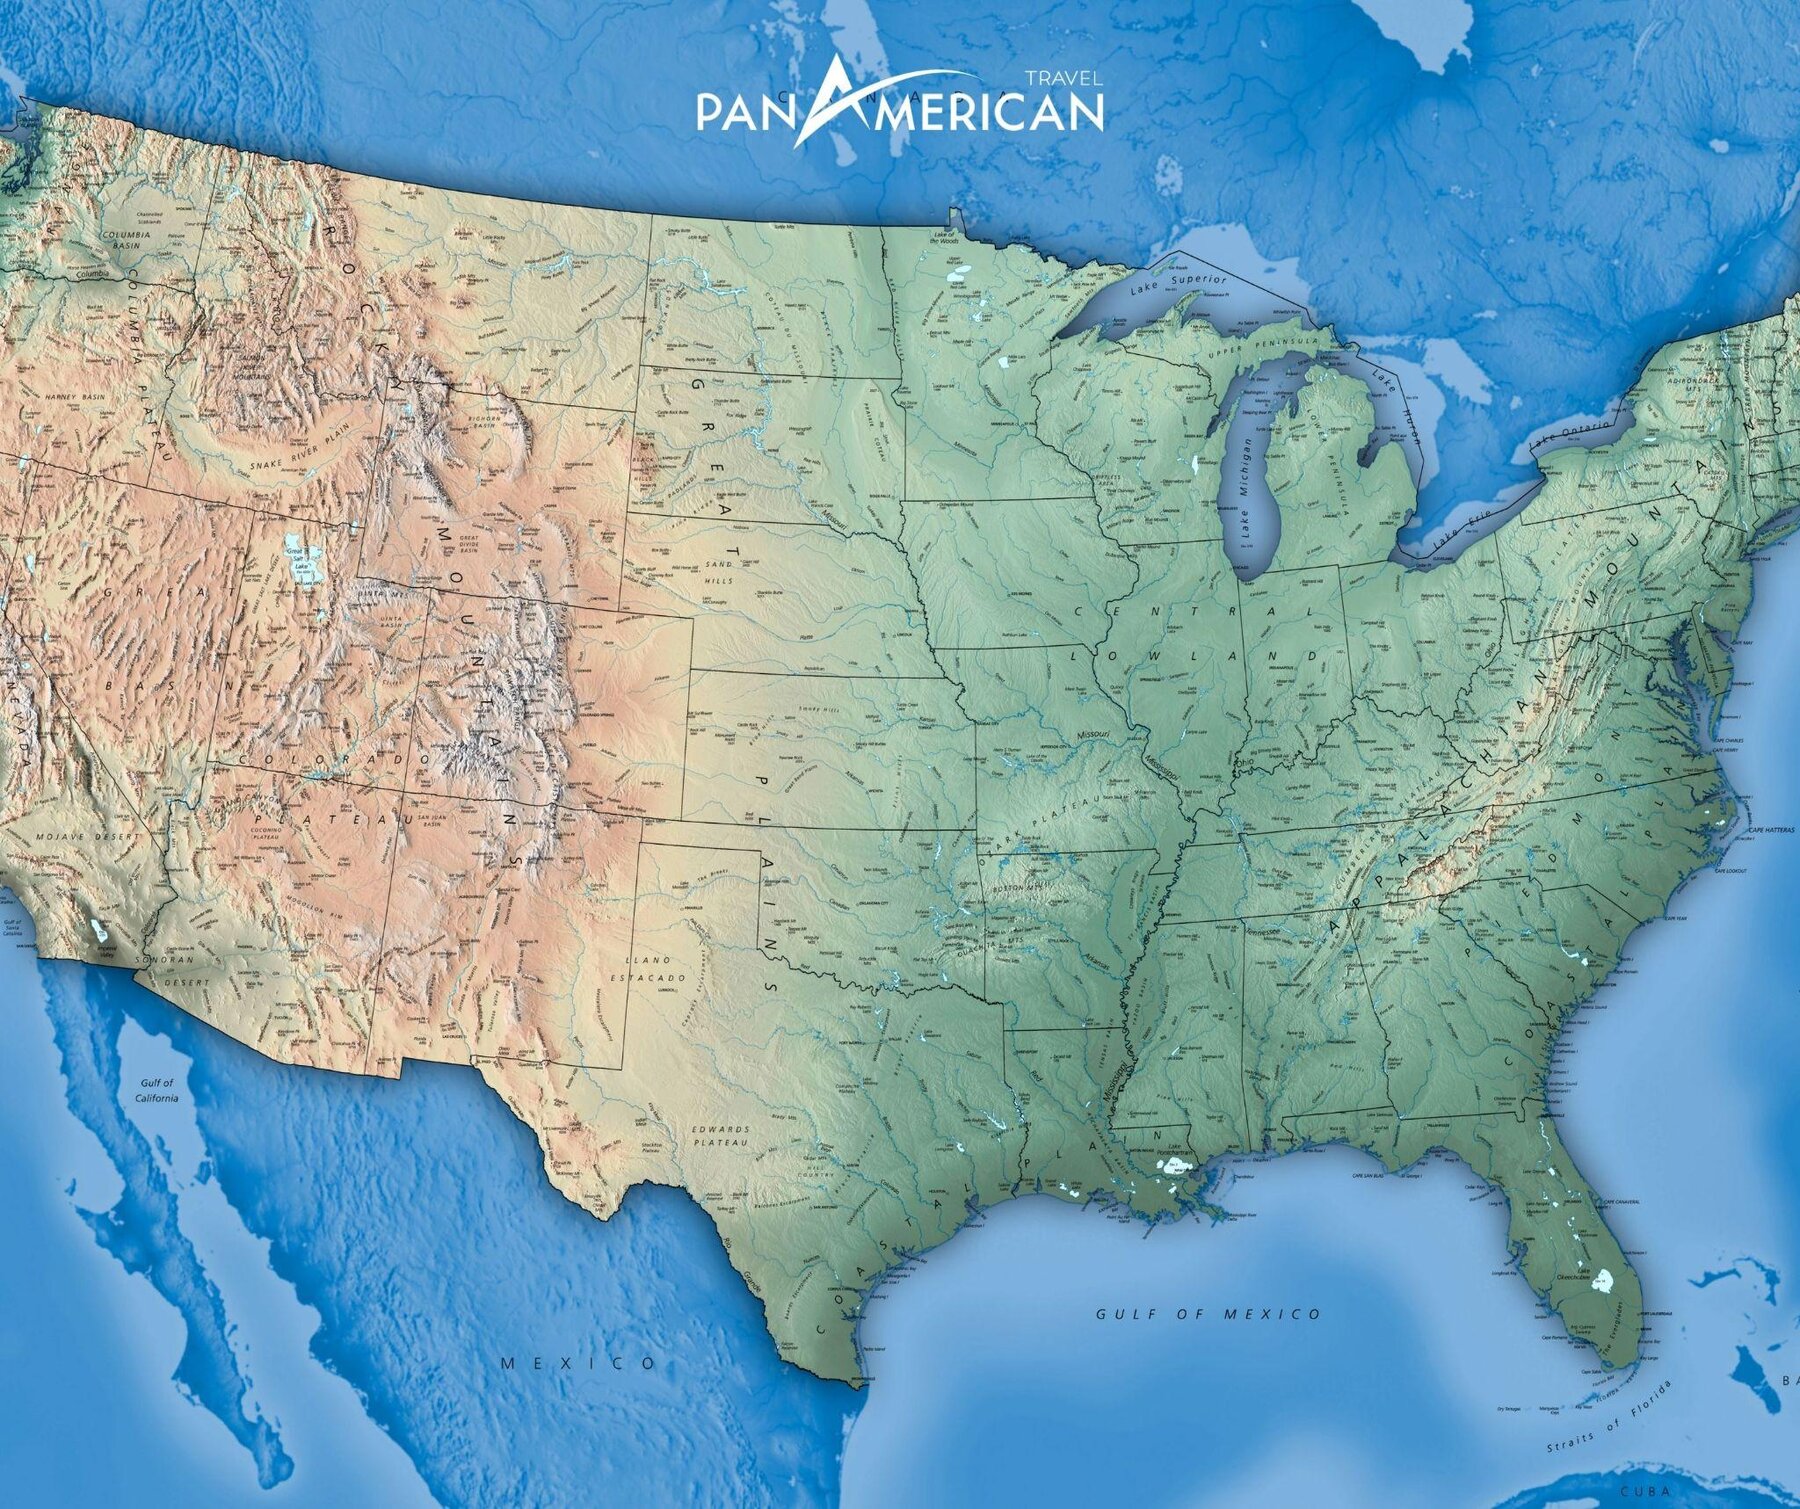 Nước Mỹ với diện tích rộng lớn, giáp 2 bờ Đại Tây Dương và Thái Bình Dương